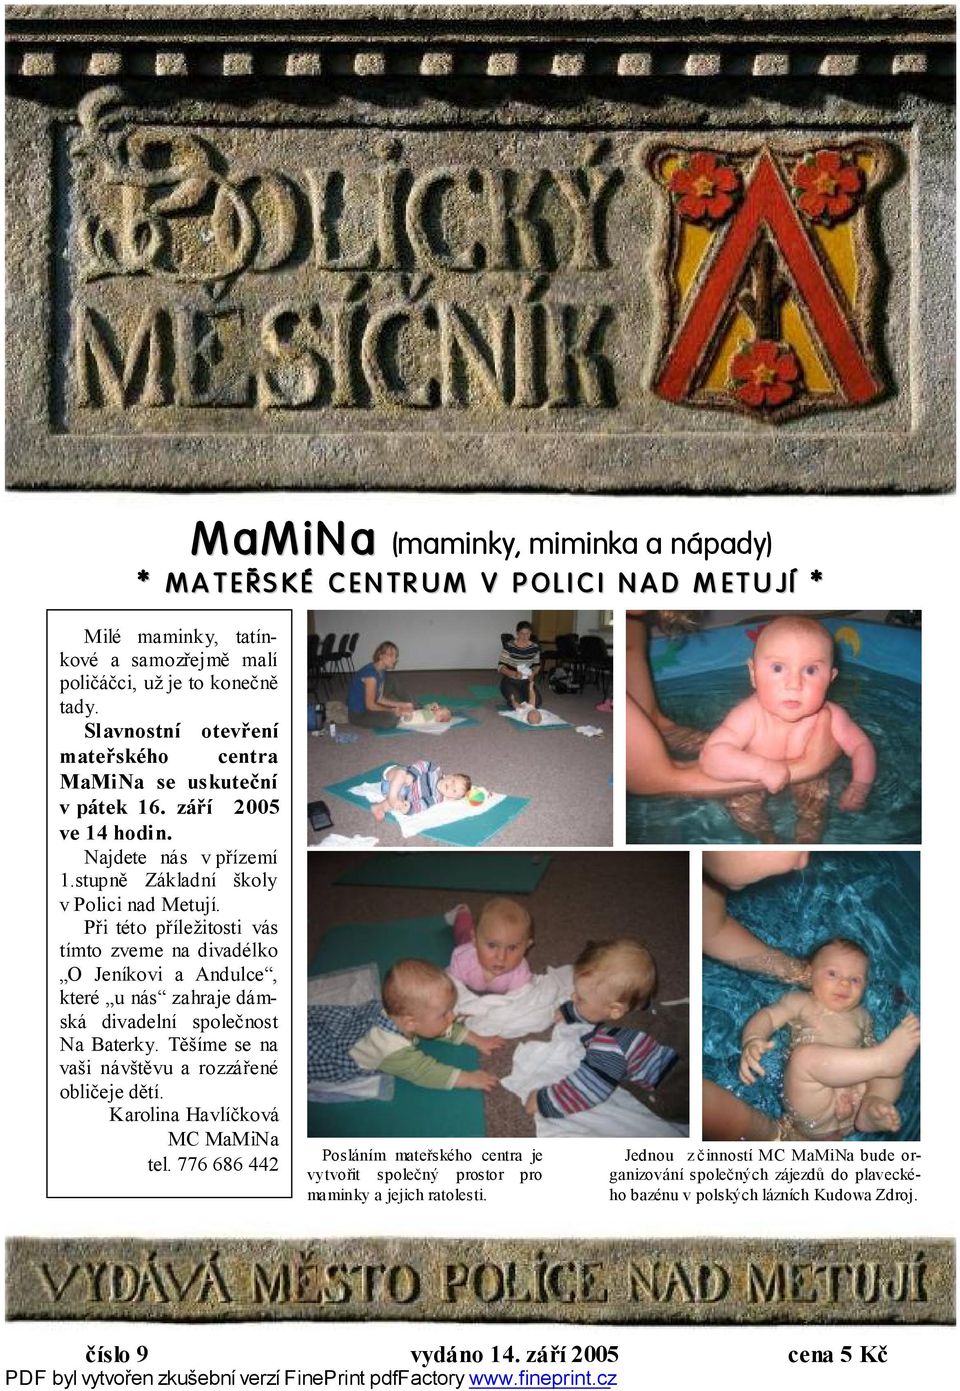 MaMiNa (maminky, miminka a nápady) - PDF Free Download